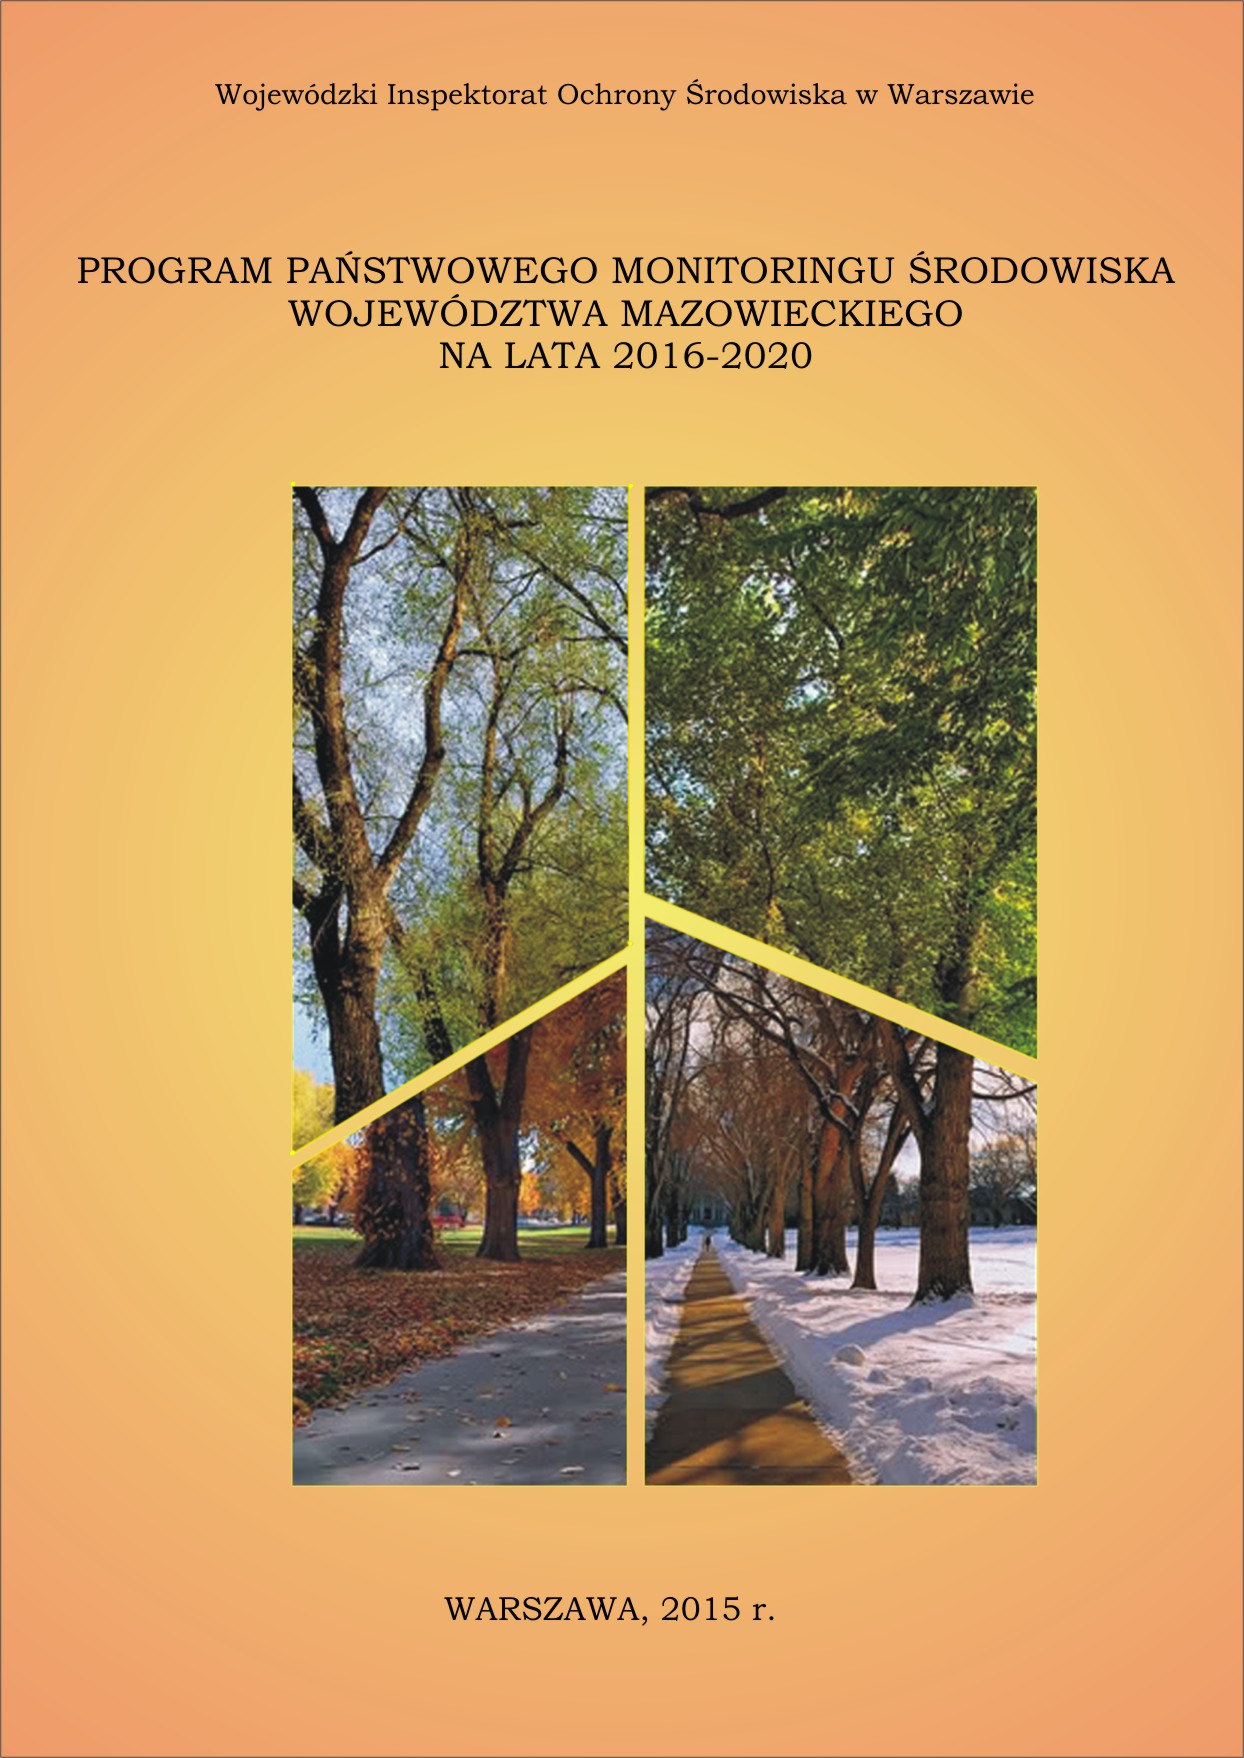 Okładka Program Państwowego Monitoringu Środowiska woj. mazowieckiego na lata 2016-2020